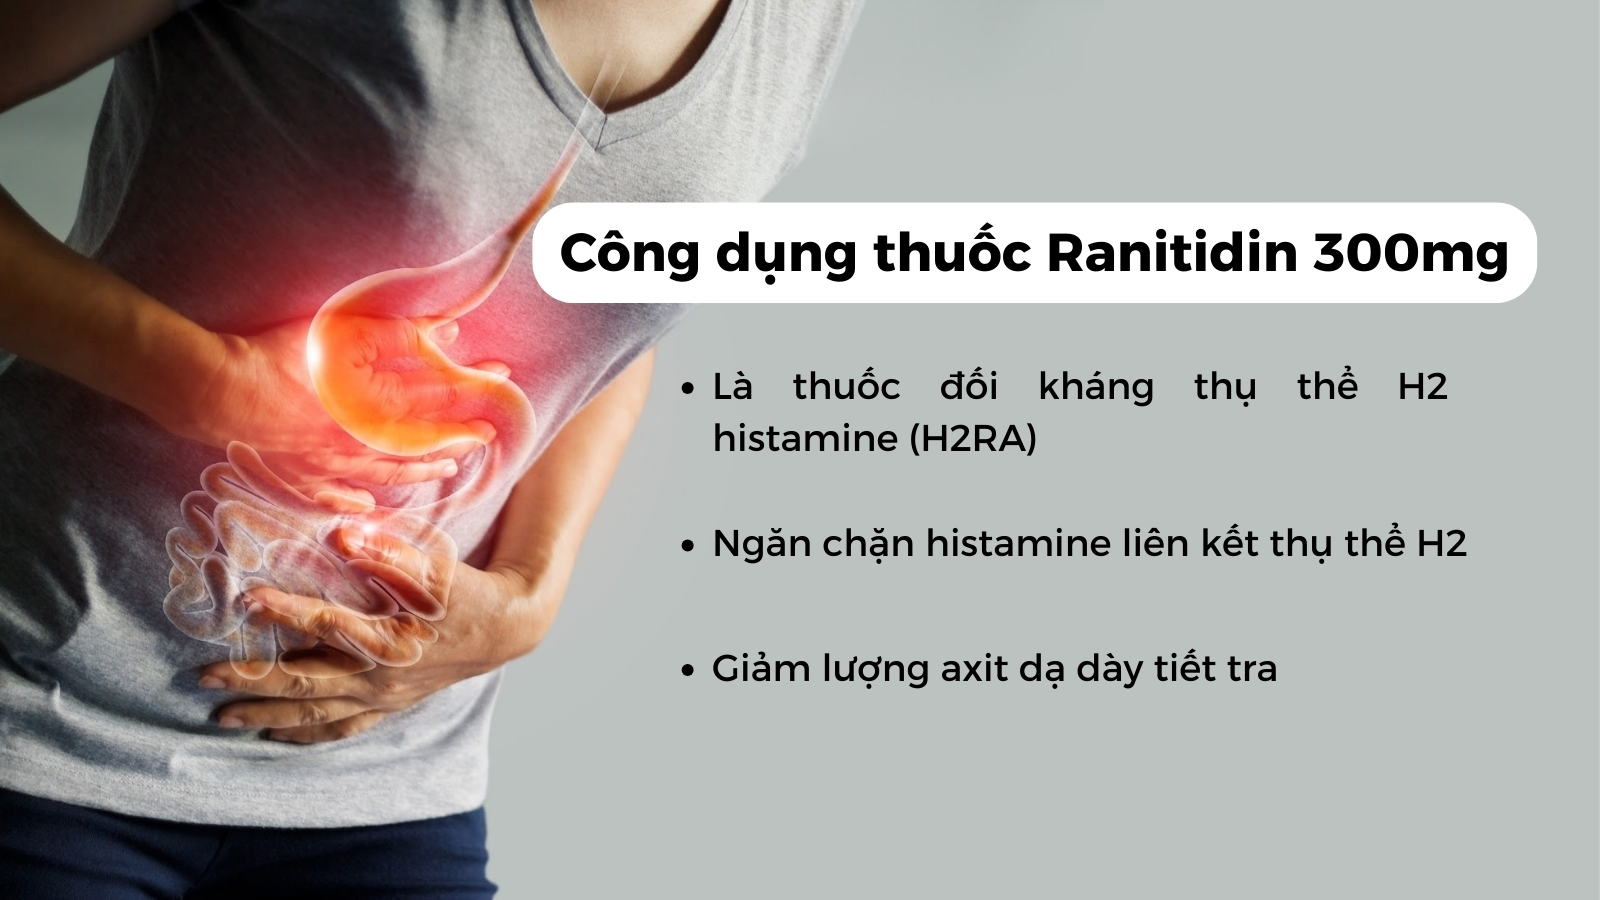 Thuốc Ranitidin 300mg điều trị bệnh lý liên quan đến dạ dày